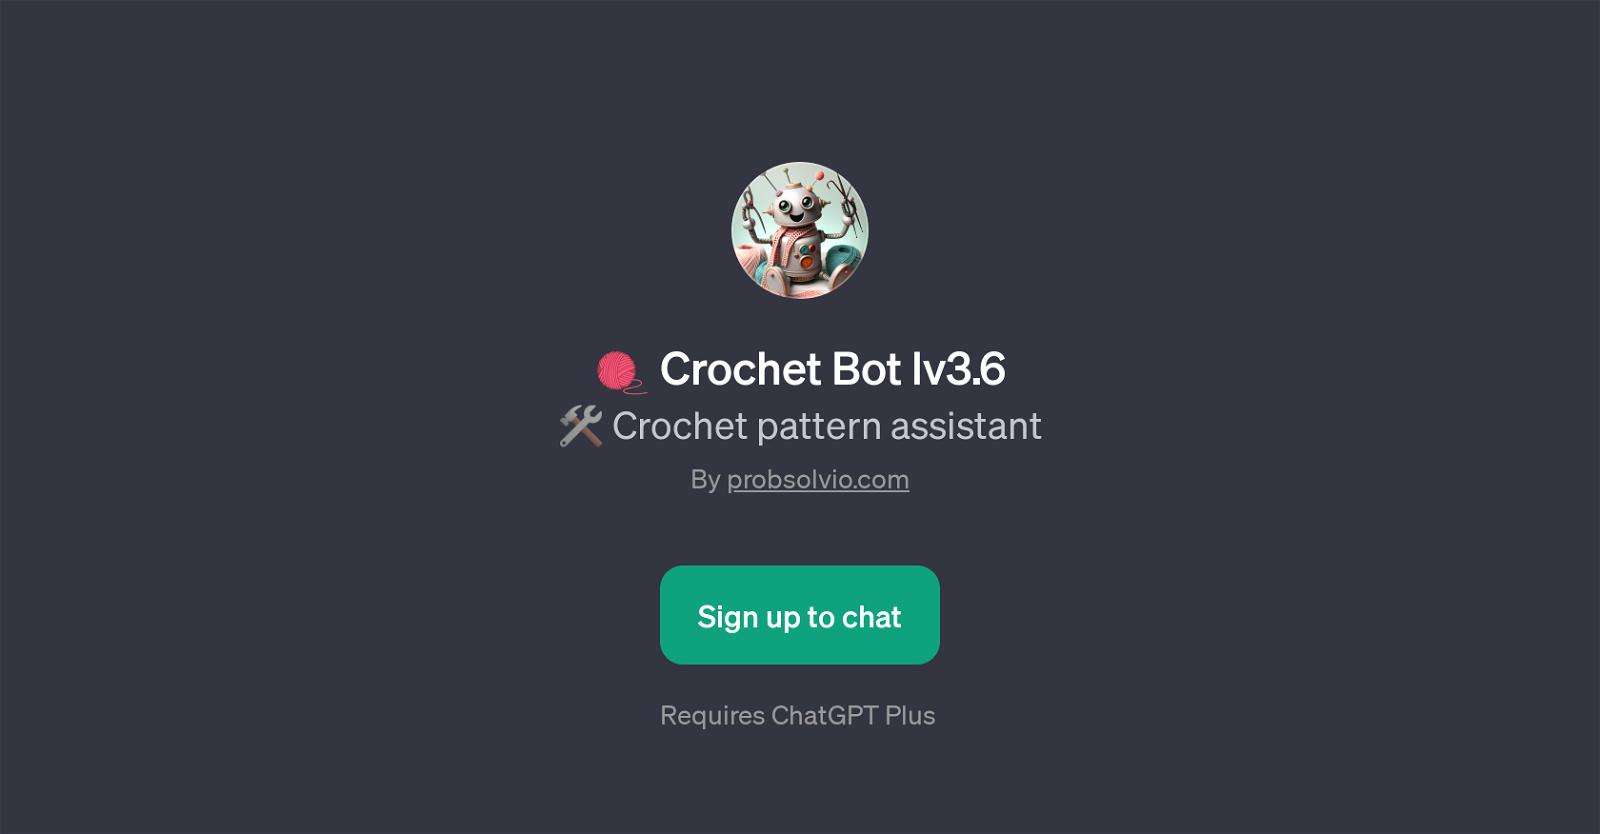 Crochet Bot lv3.6 website